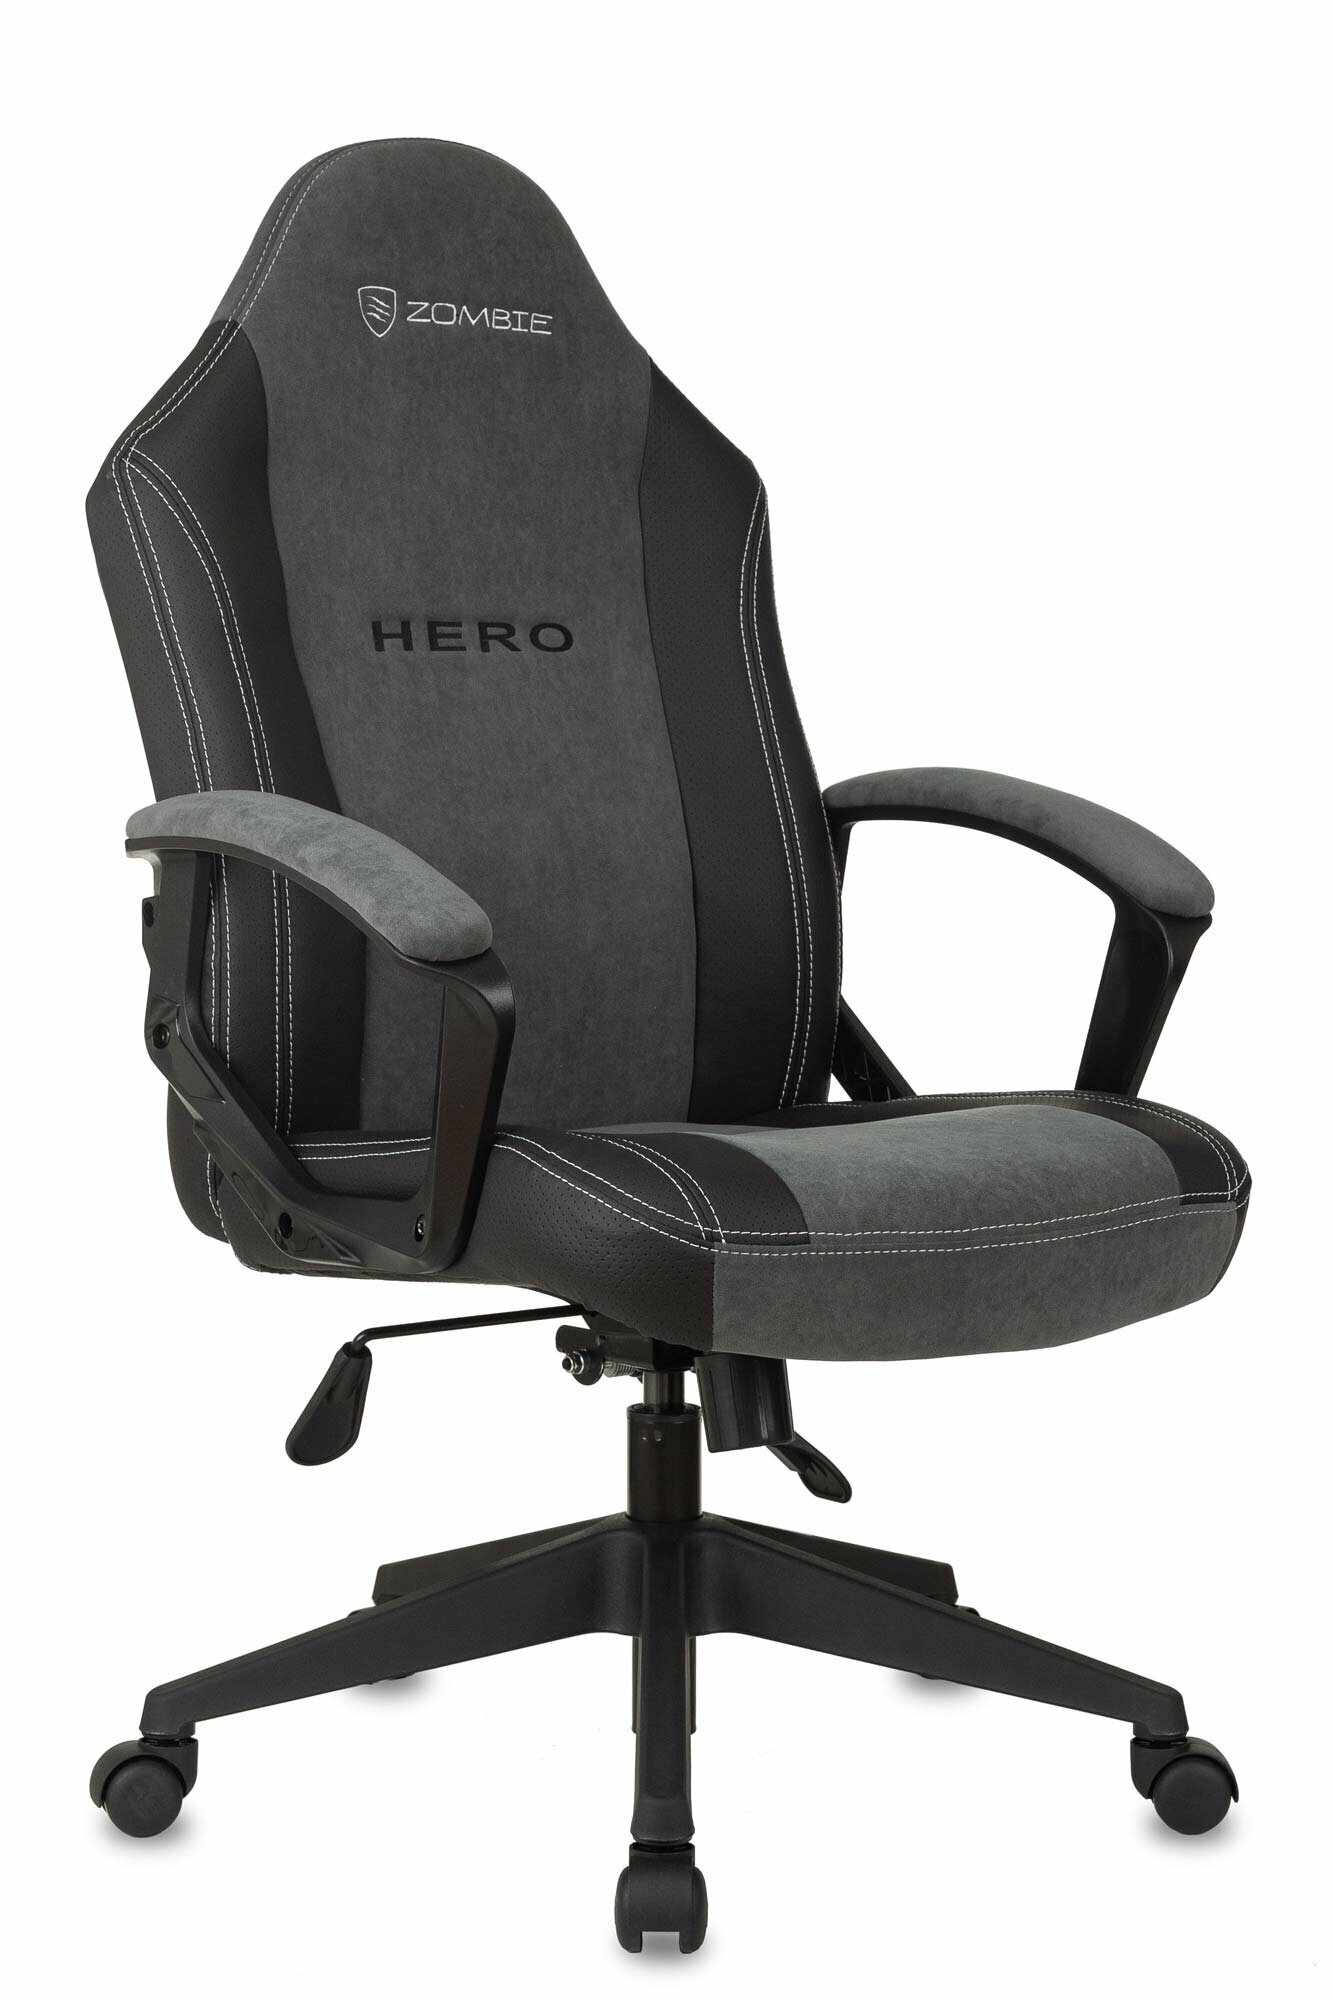 Компьютерное кресло Zombie Hero игровое, обивка: текстиль/искусственная кожа, цвет: серый